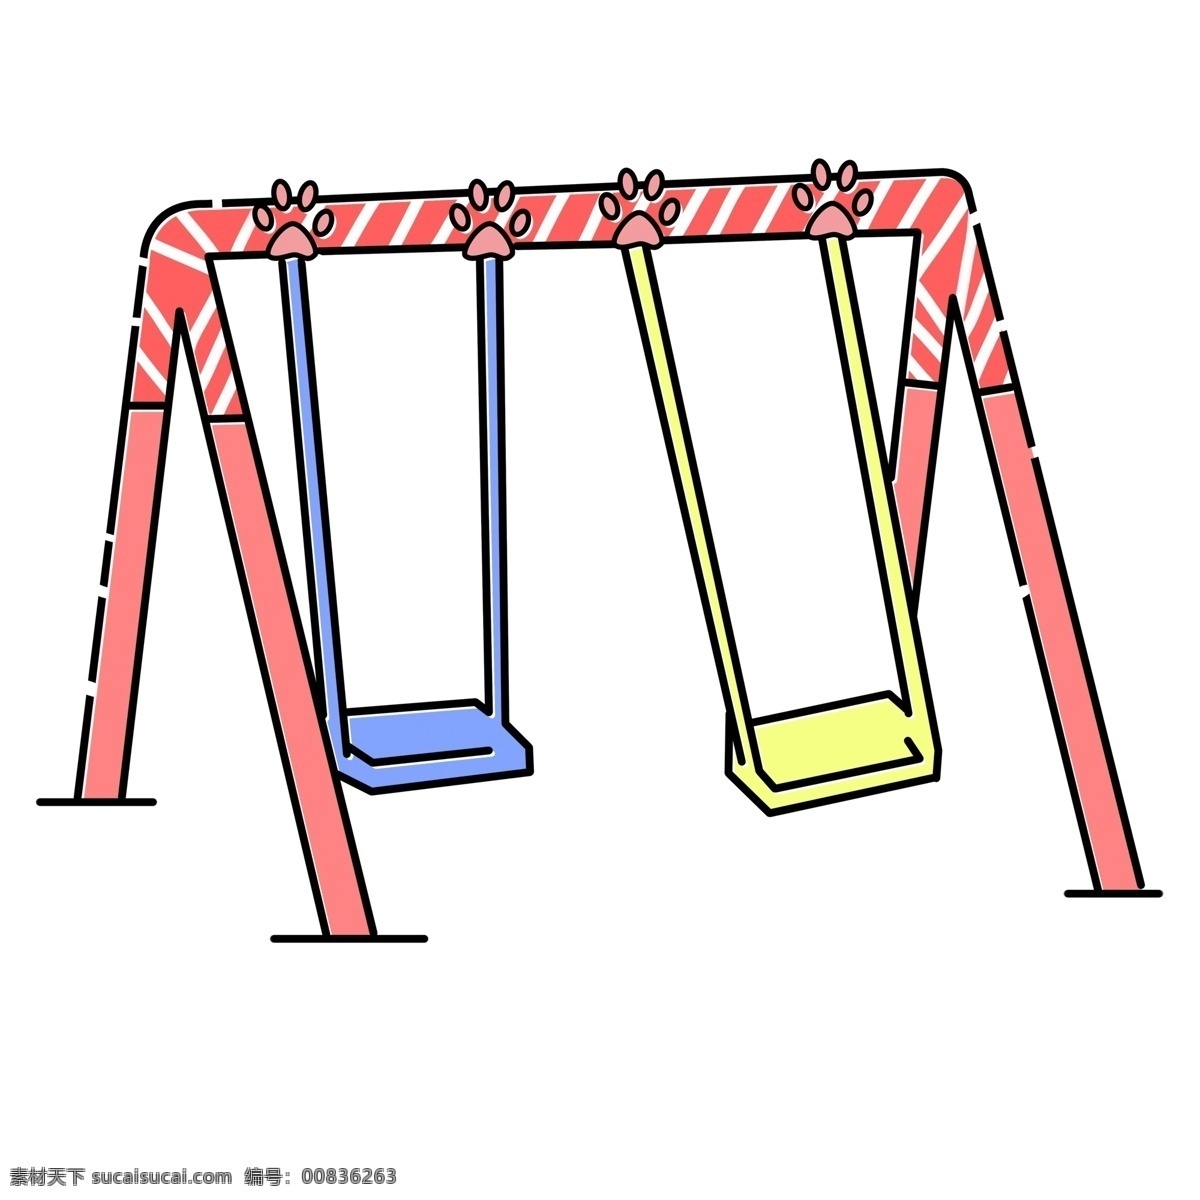 儿童游乐 设备 免 抠 图 儿童游乐场 卡通插画 插画 小朋友的最爱 游乐设备 儿童游乐设备 彩色摇椅